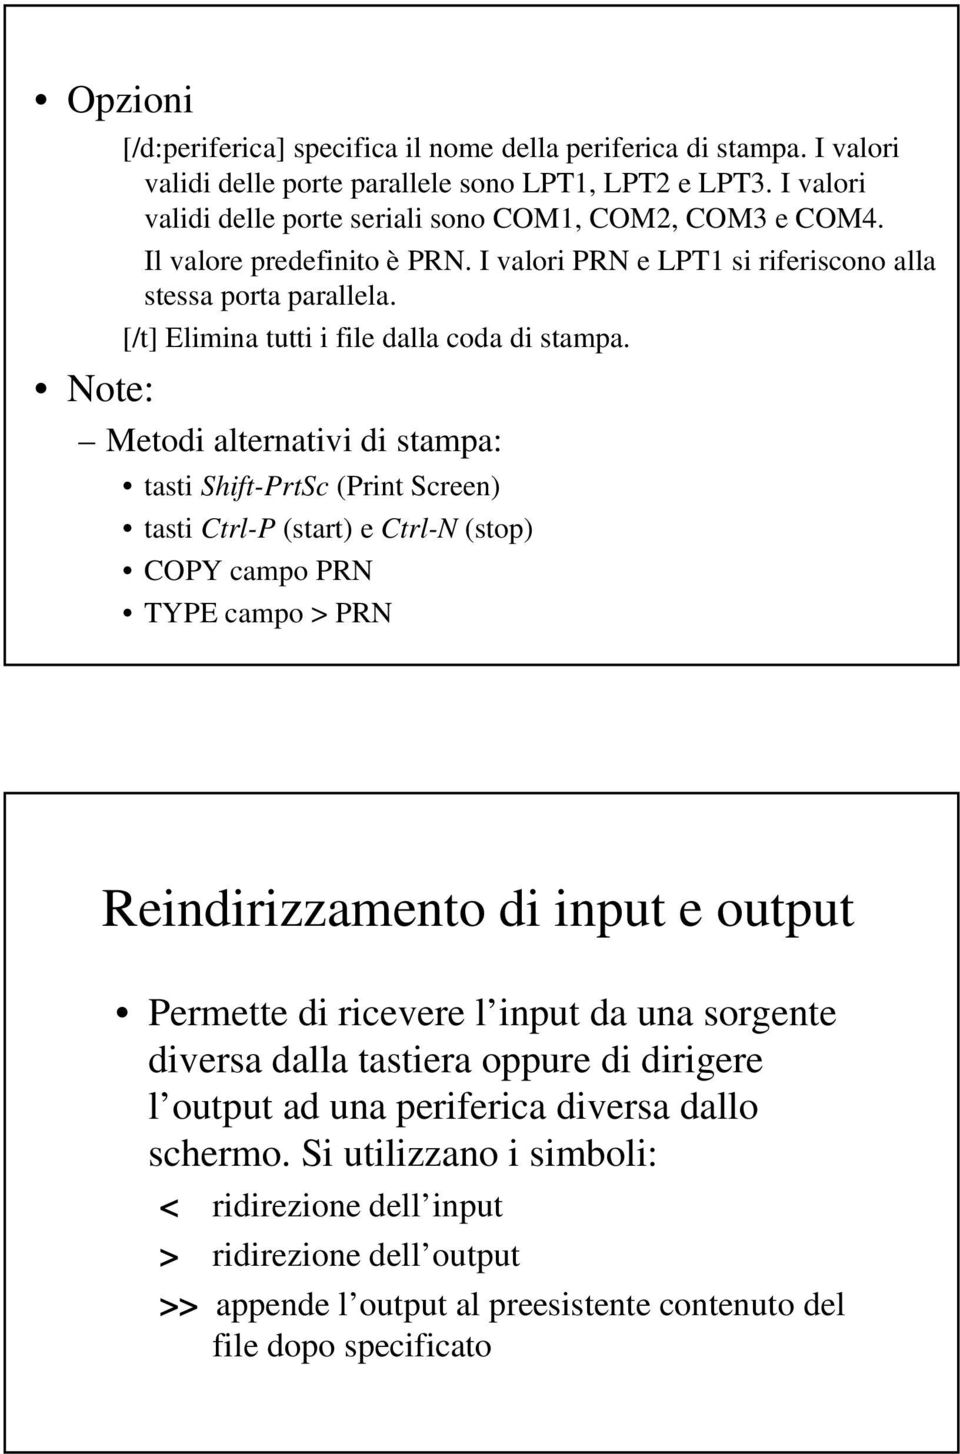 Note: Metodi alternativi di stampa: tasti Shift-PrtSc (Print Screen) tasti Ctrl-P (start) e Ctrl-N (stop) COPY campo PRN TYPE campo > PRN Reindirizzamento di input e output Permette di ricevere l